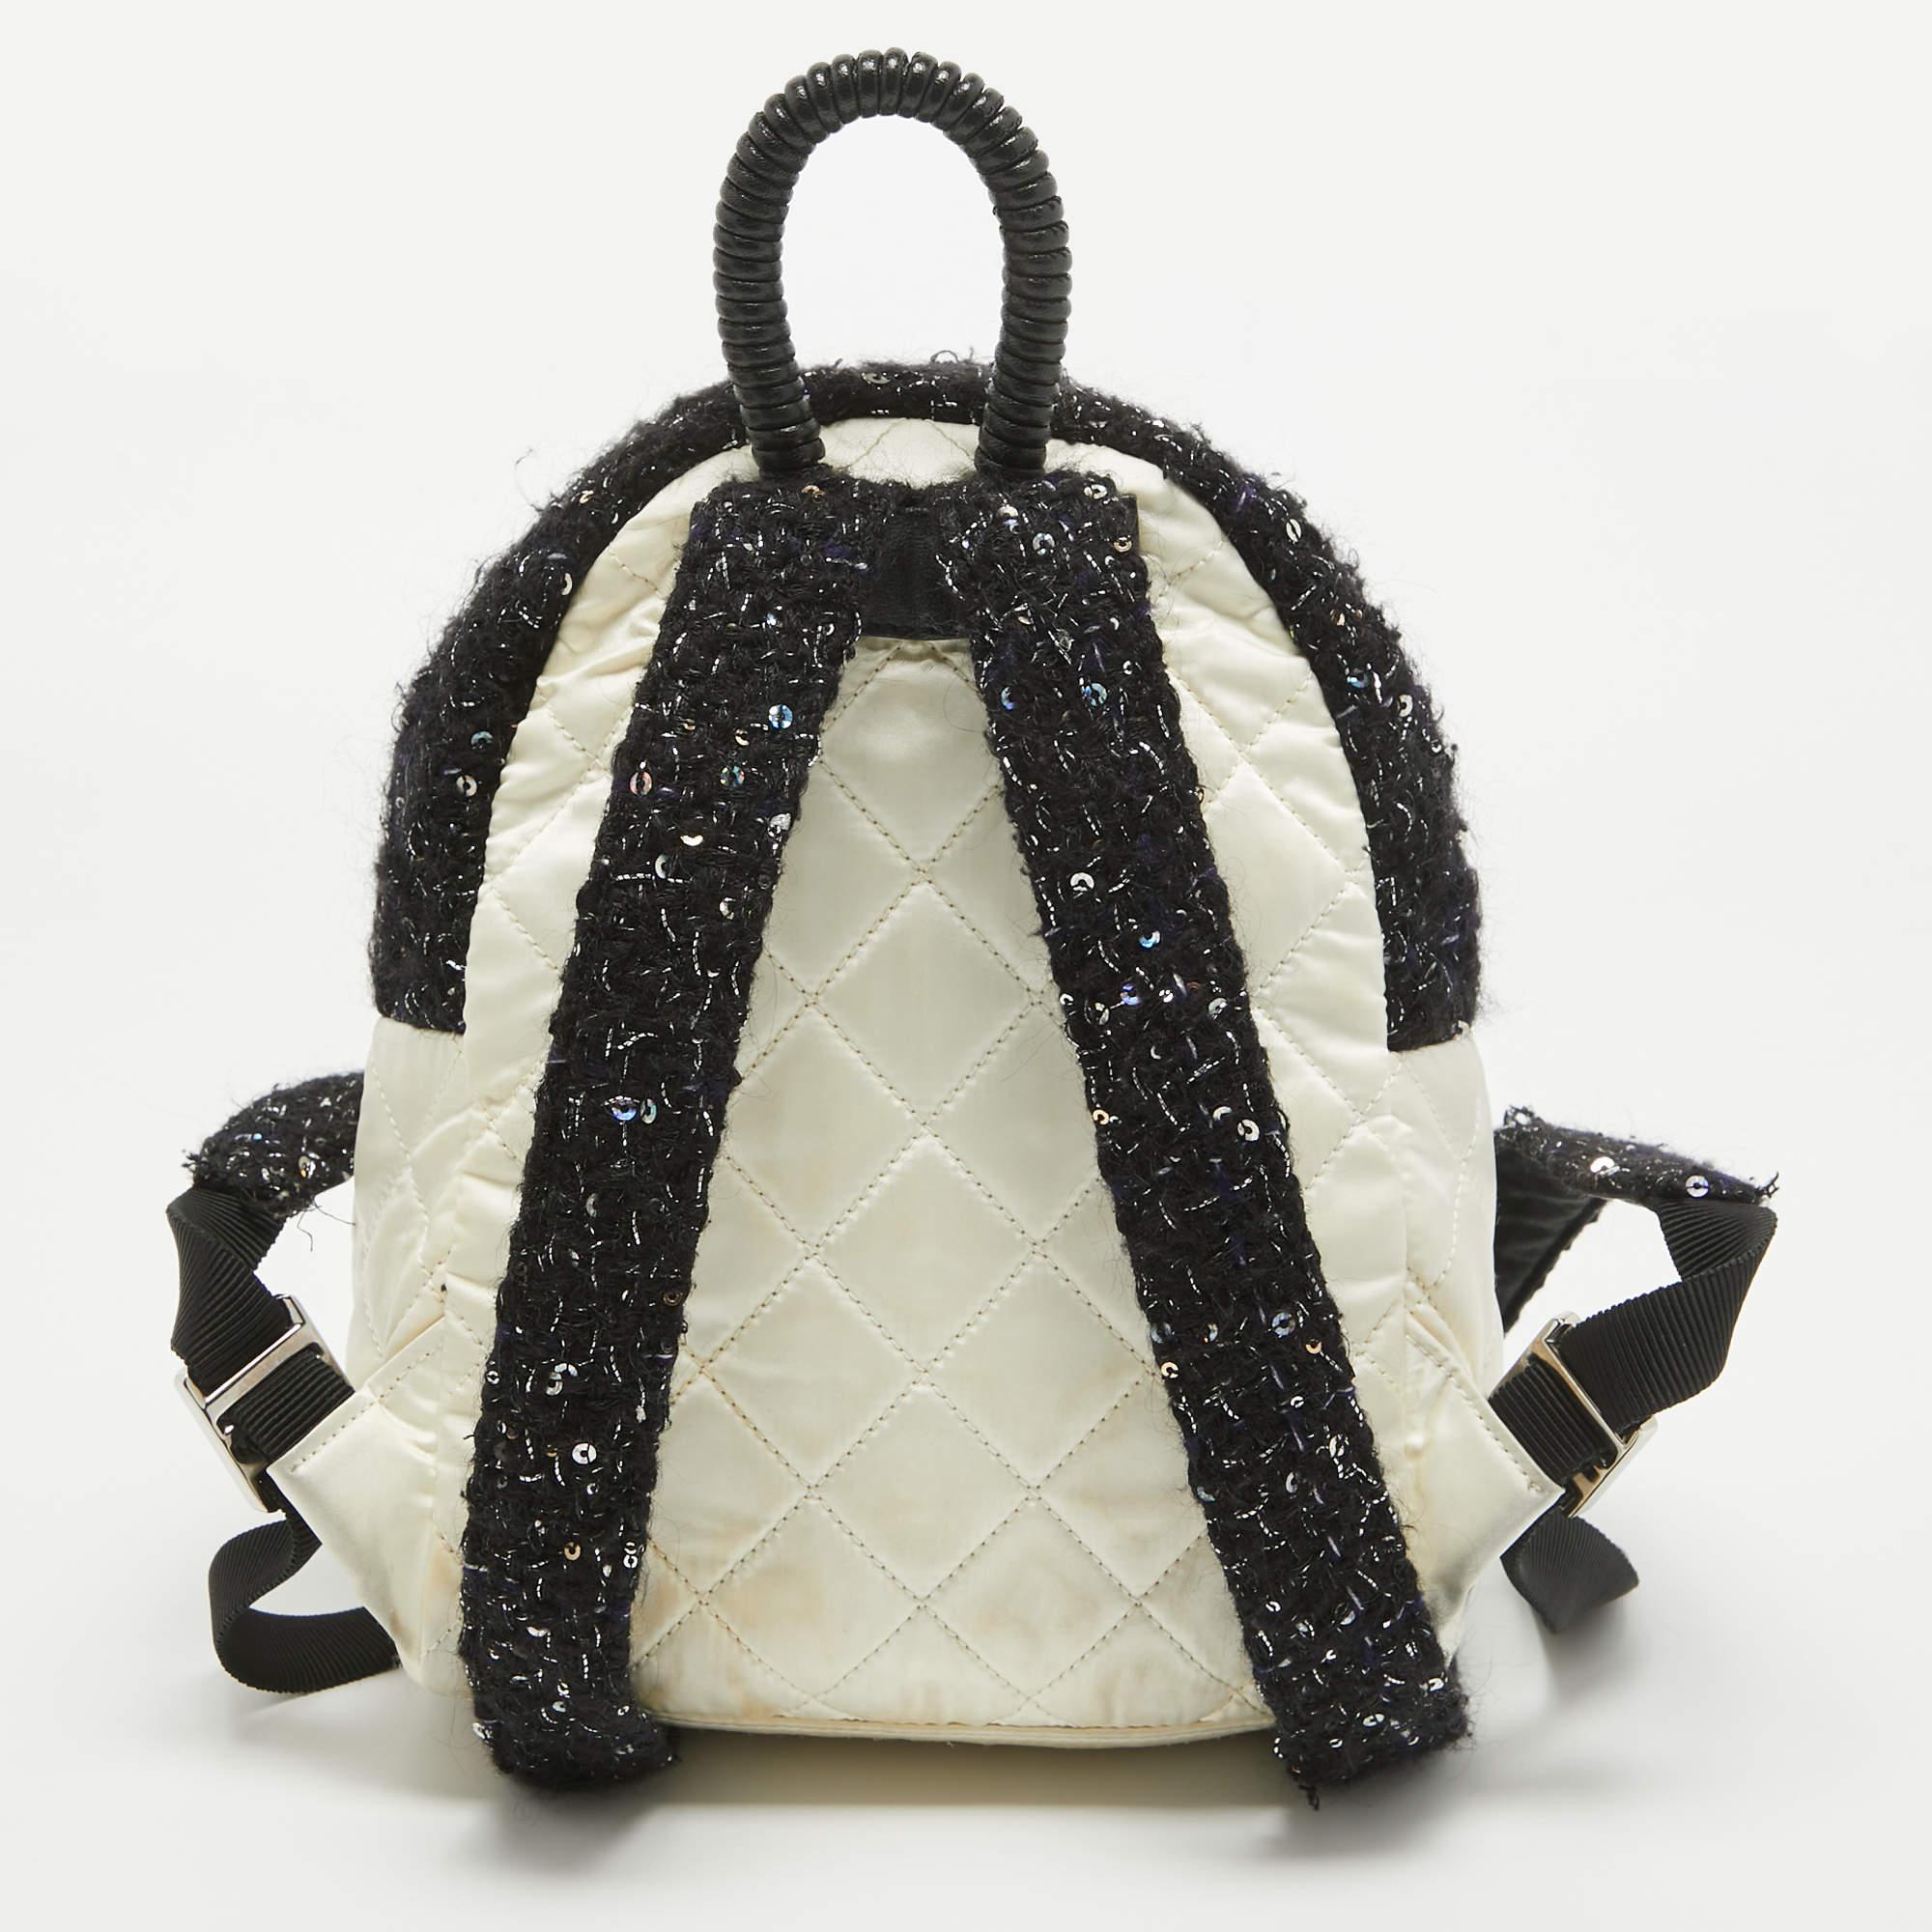 Ce sac à dos Chanel est fabriqué à partir de matériaux de haute qualité dans un design fonctionnel. Le sac complétera également votre style sans effort.

